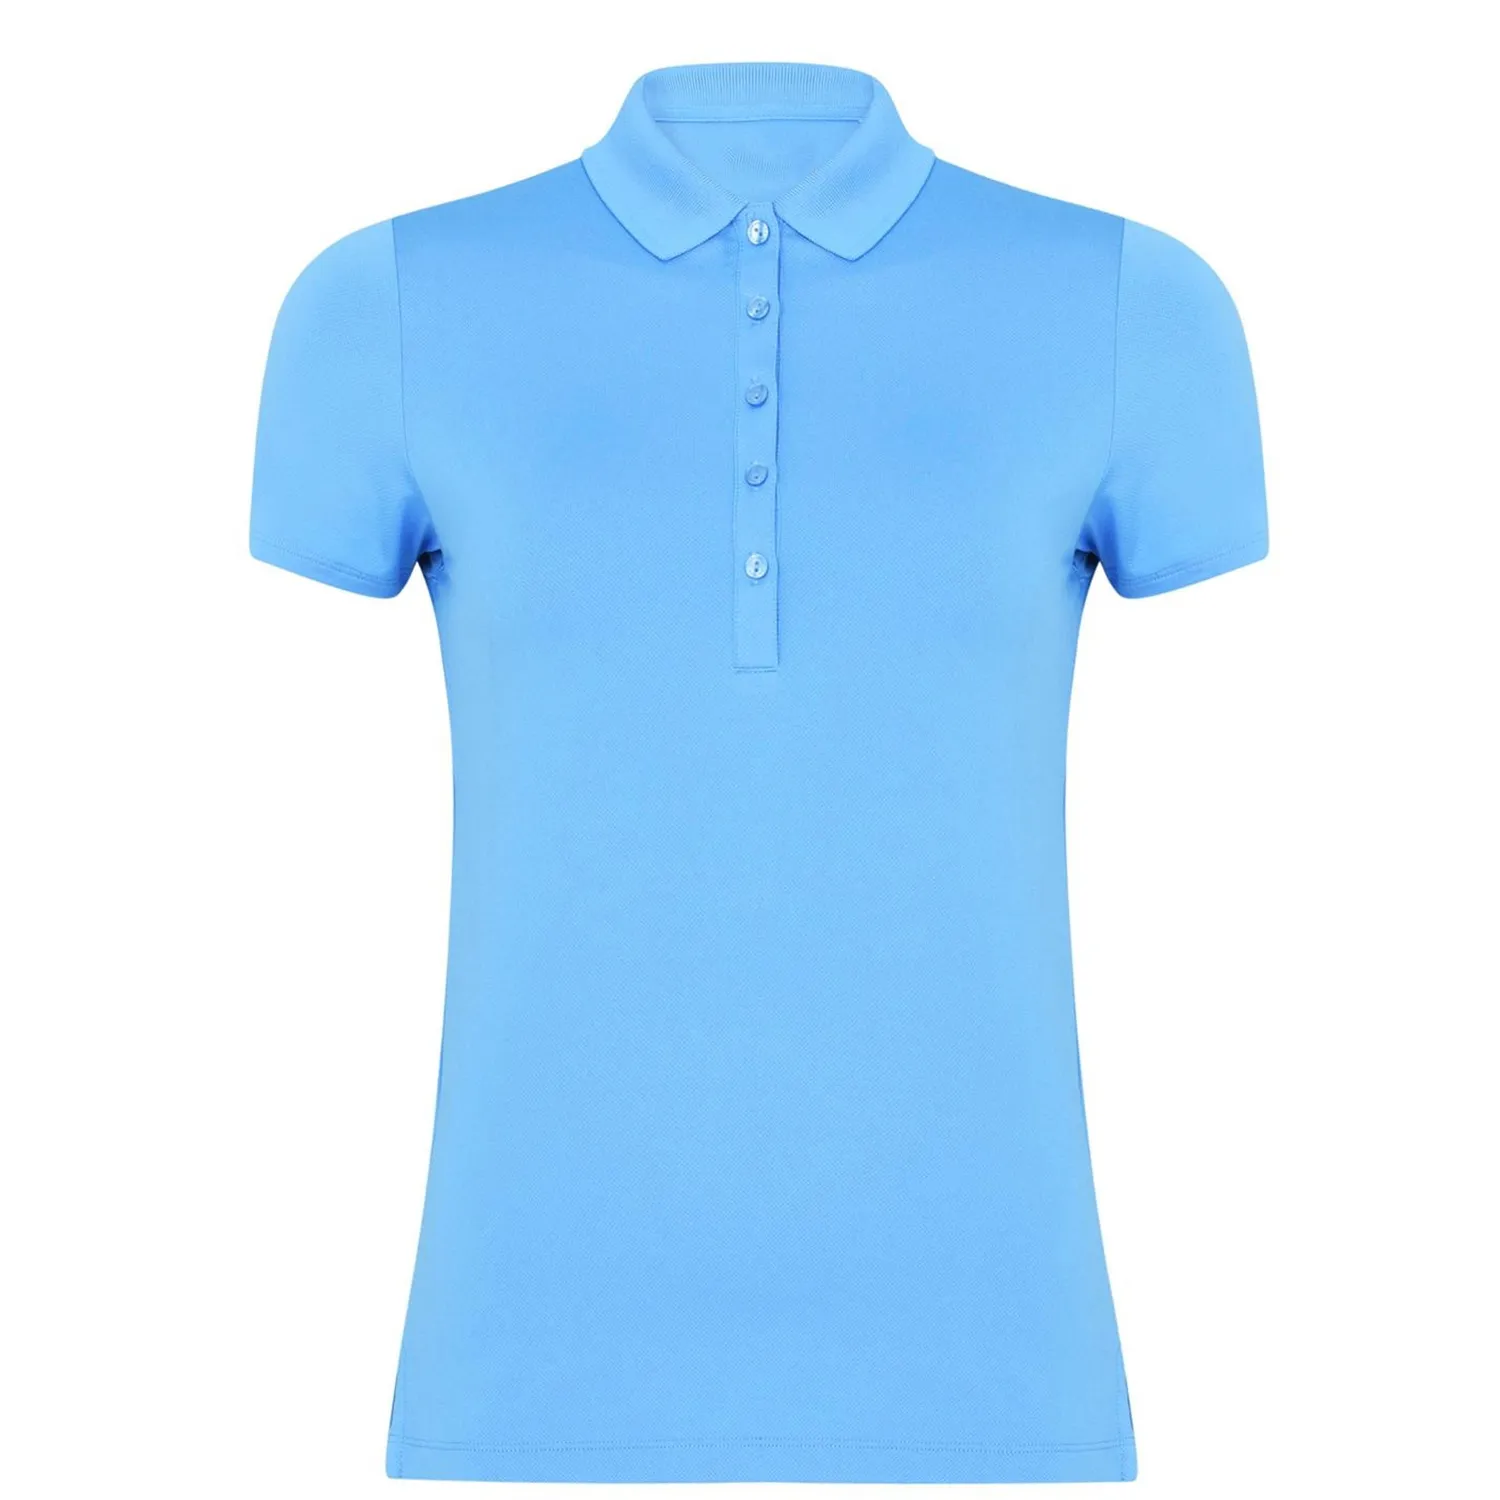 Хит продаж, женские рубашки поло для гольфа с логотипом на заказ, высокое качество с 100% хлопковые дышащие рубашки поло с коротким рукавом, цвета на заказ